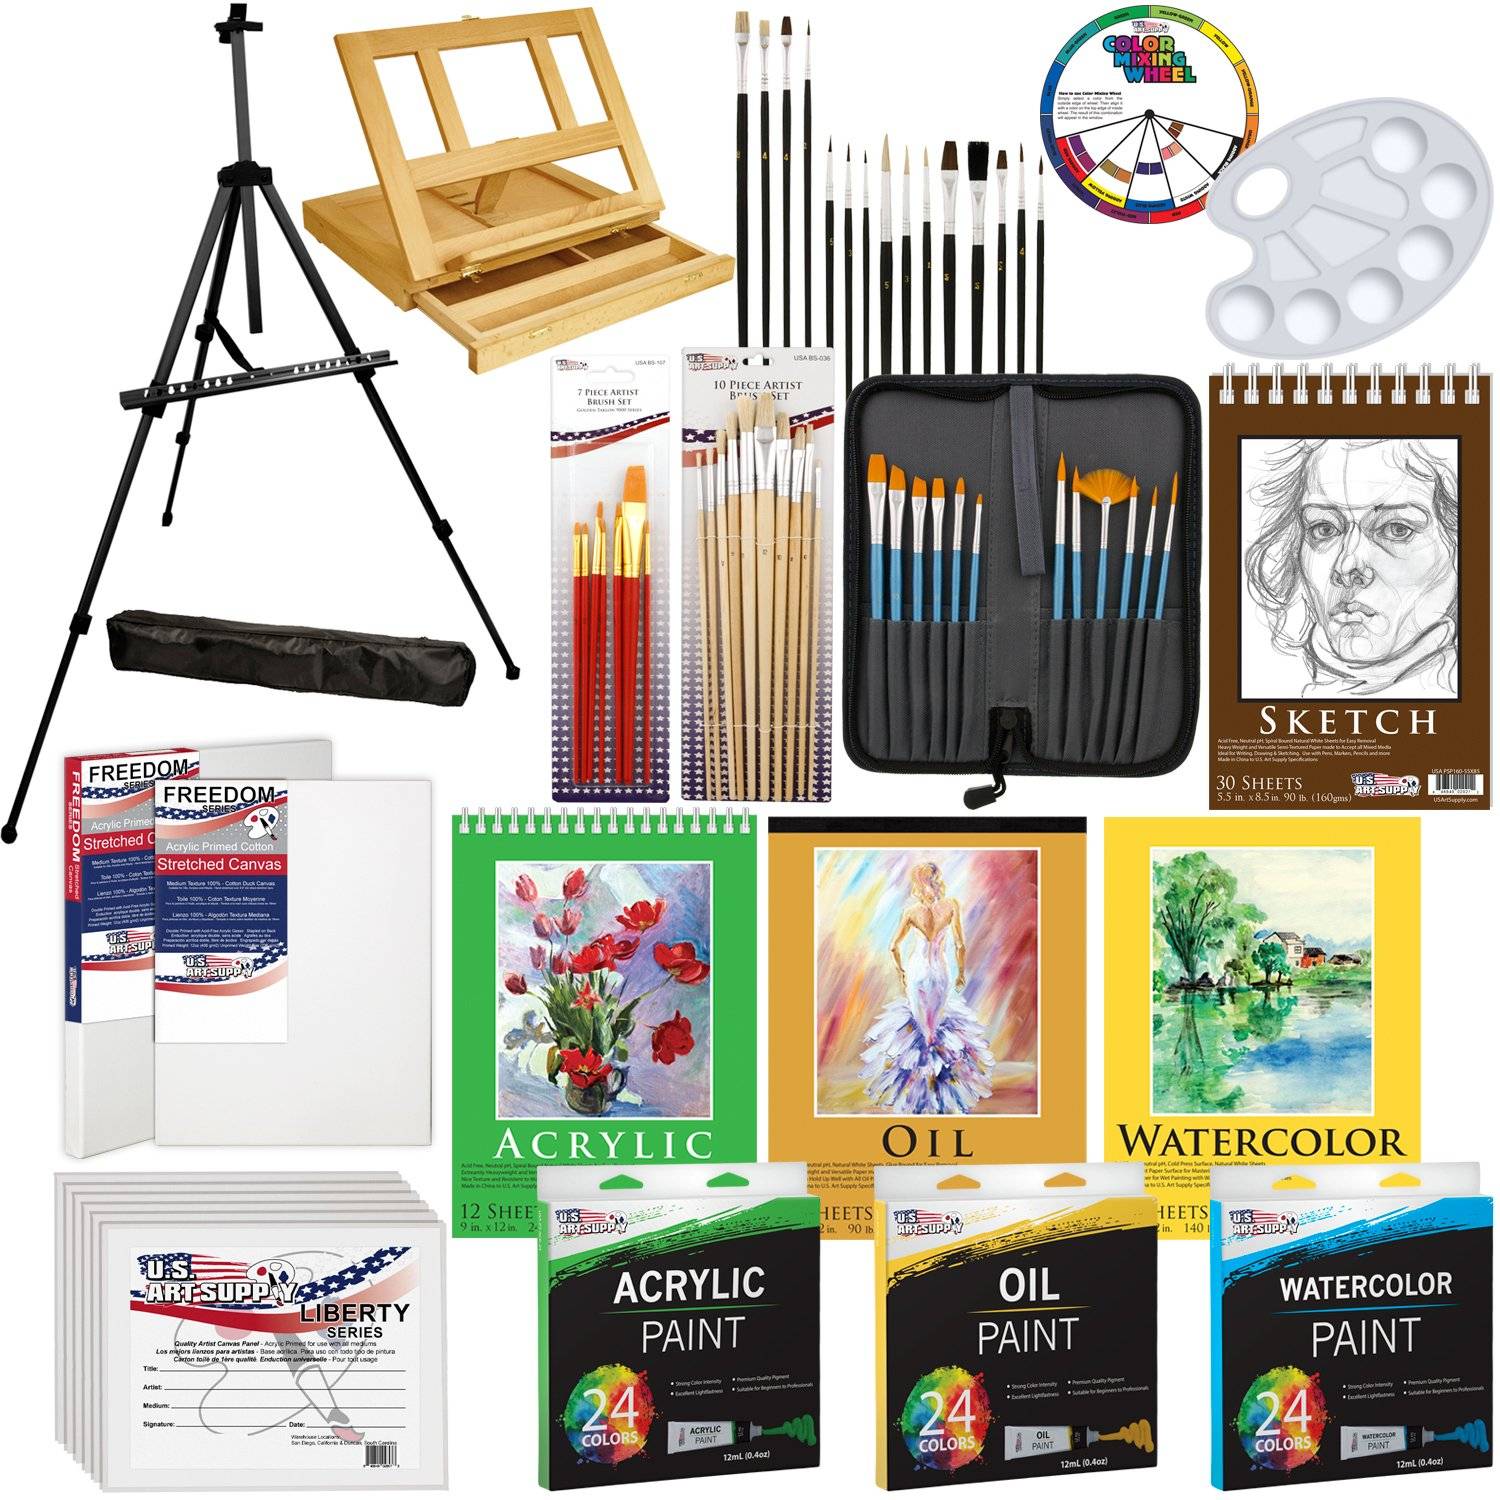 Category - Art supplies — U.S. Art Supply